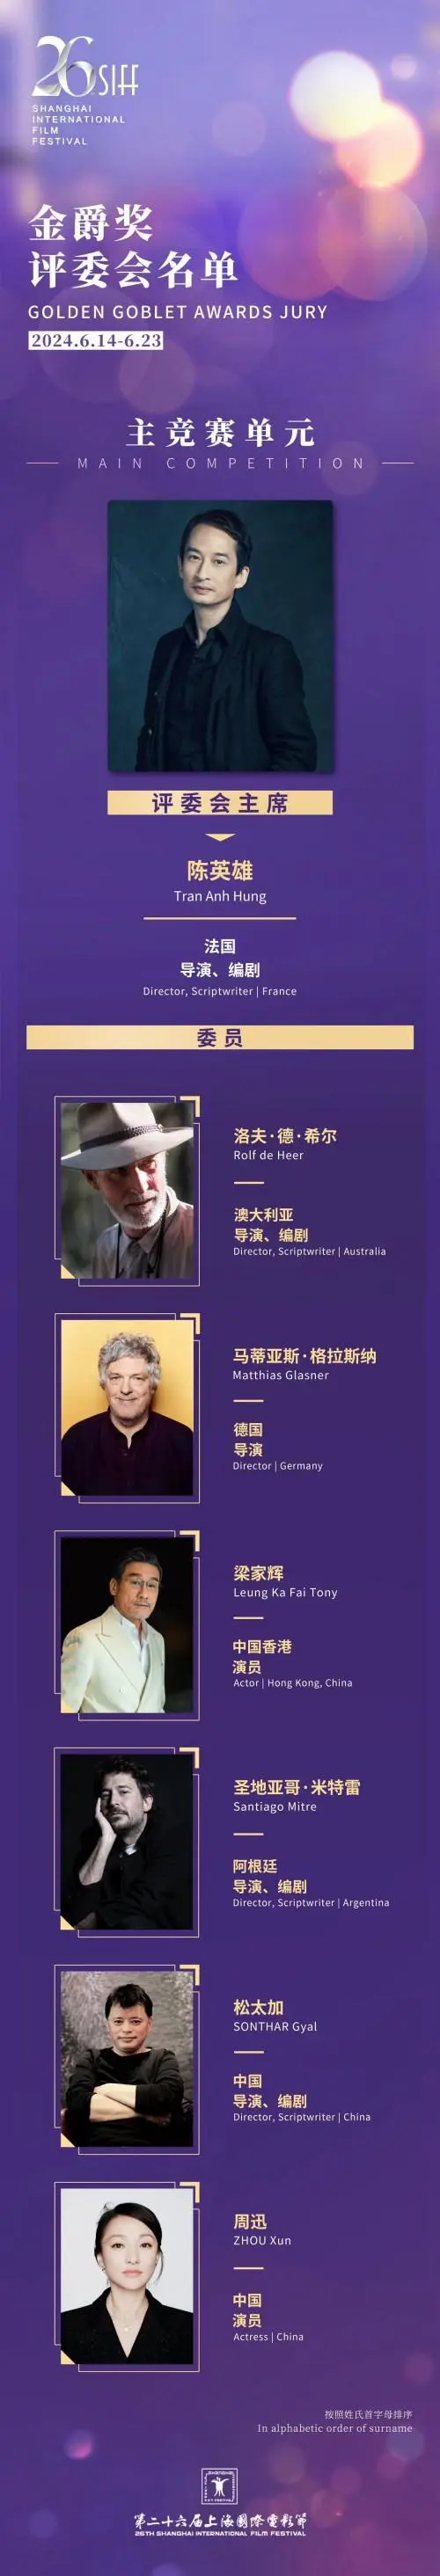 第二十六届上海国际电影节、第二十九届上海电视节6月举行